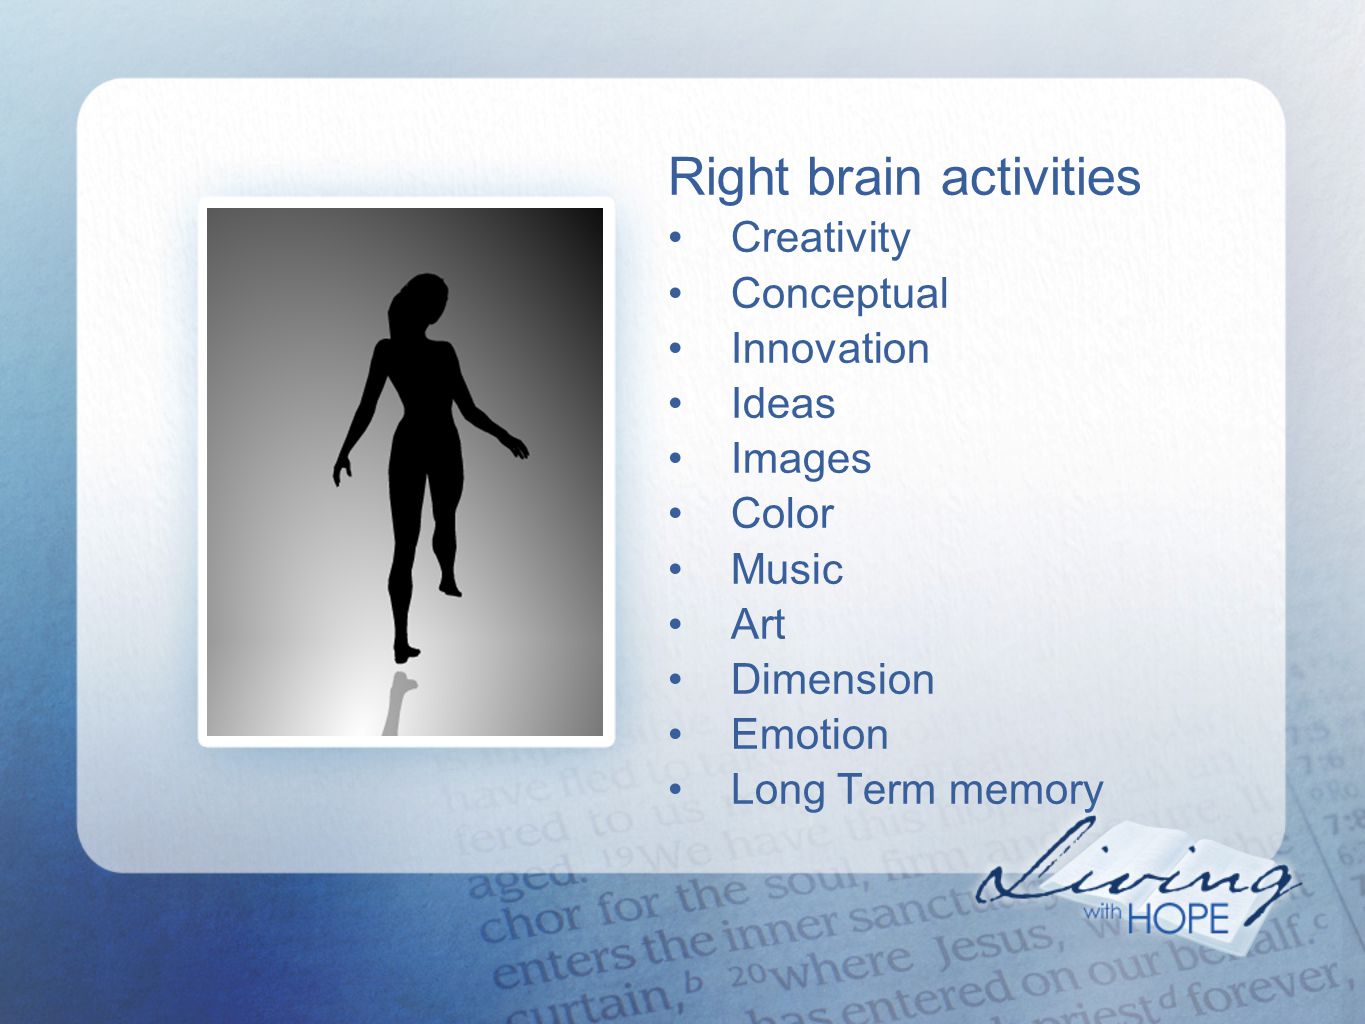 Right brain activities